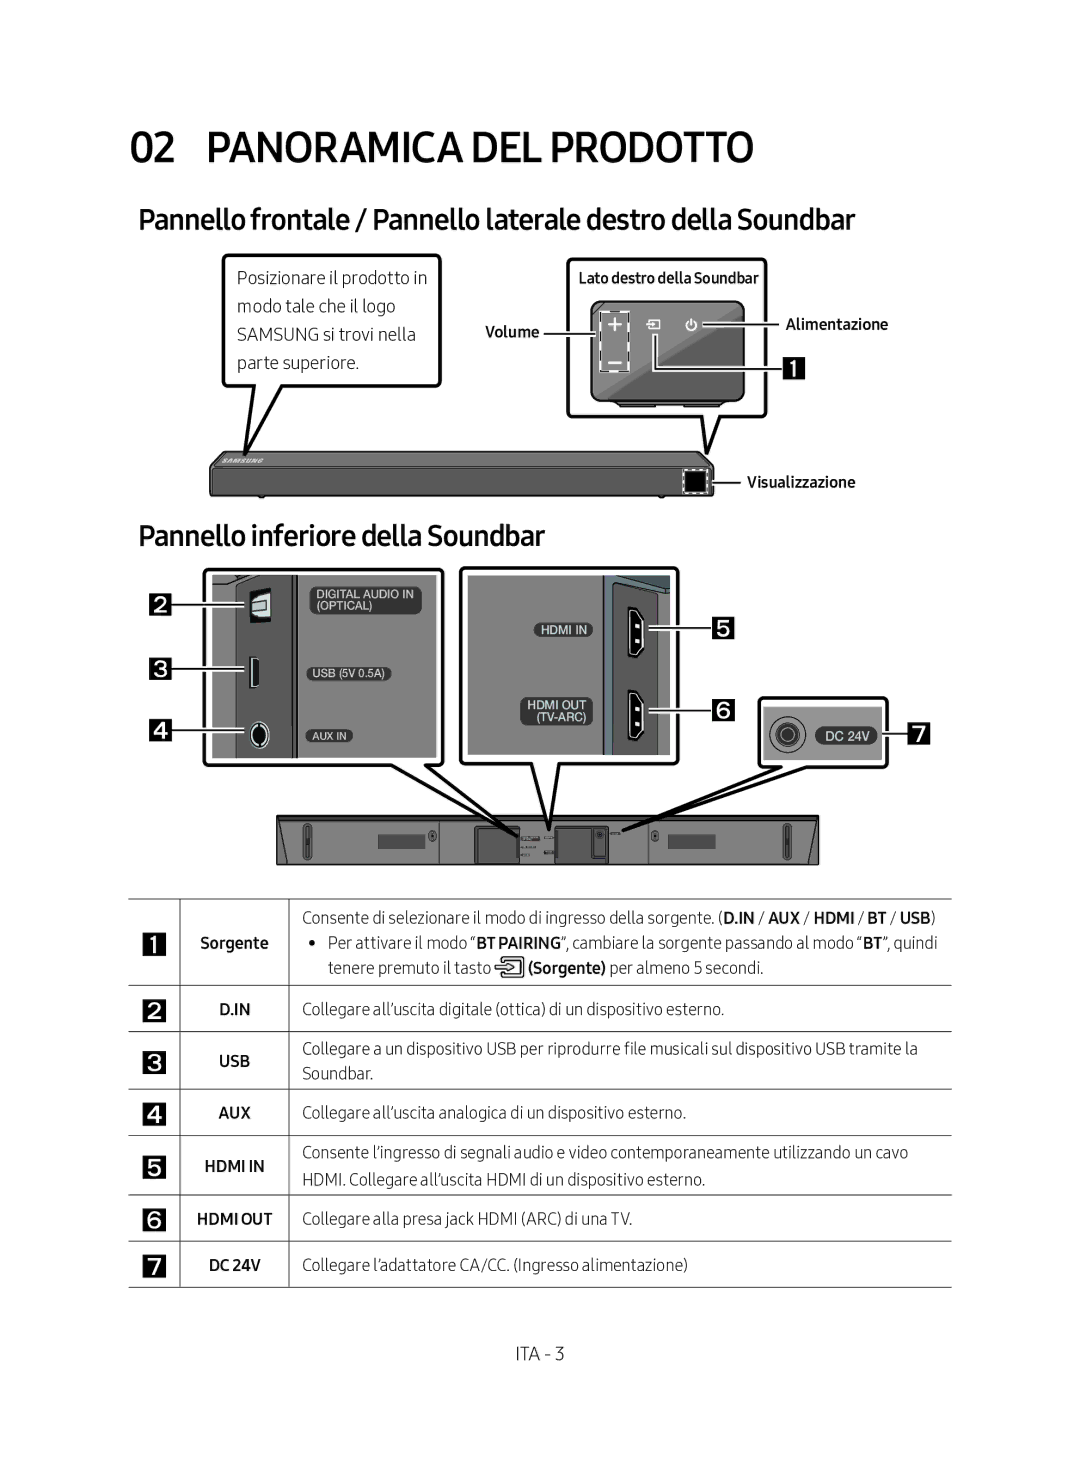 Samsung HW-N450/ZF Panoramica DEL Prodotto, Pannello frontale / Pannello laterale destro della Soundbar, Visualizzazione 